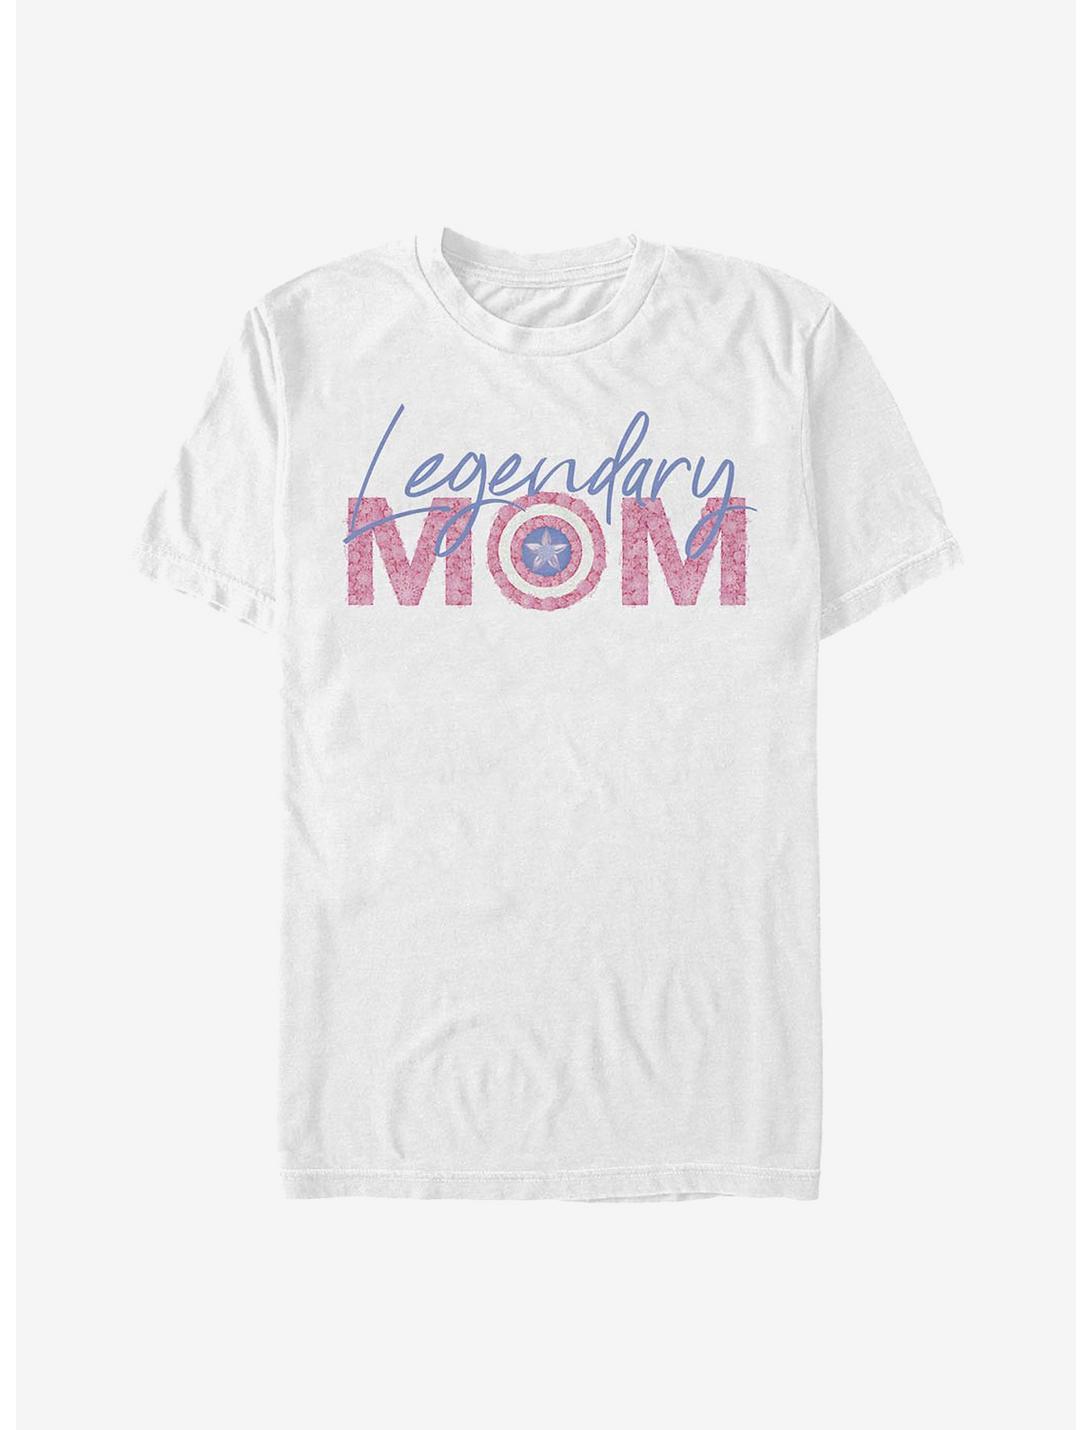 Marvel Captain America Legendary Mom Flowers T-Shirt - WHITE | Hot Topic